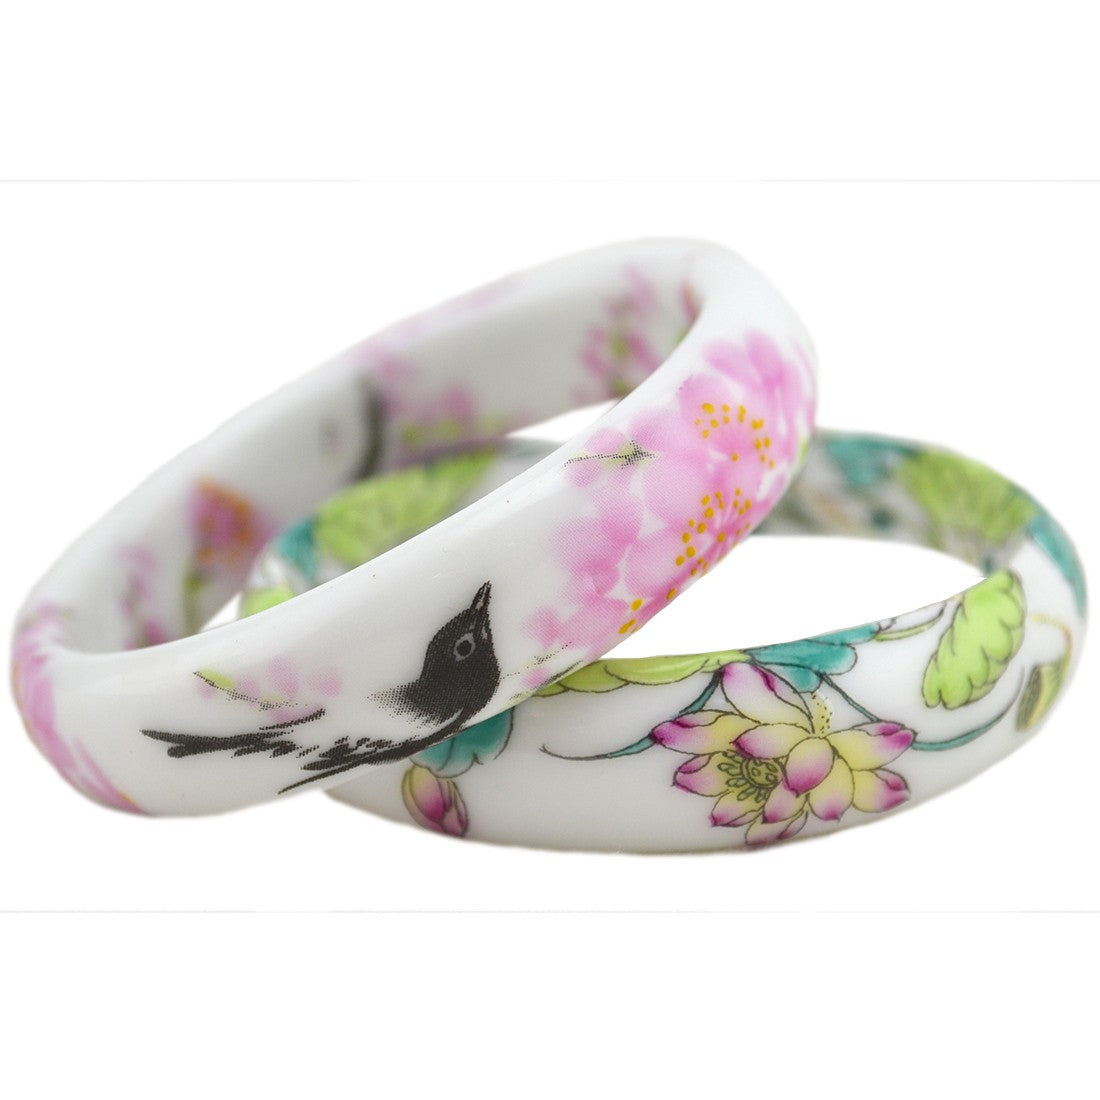 Porcelain Bangle - Cherry Blossom w/Bird - Original Source